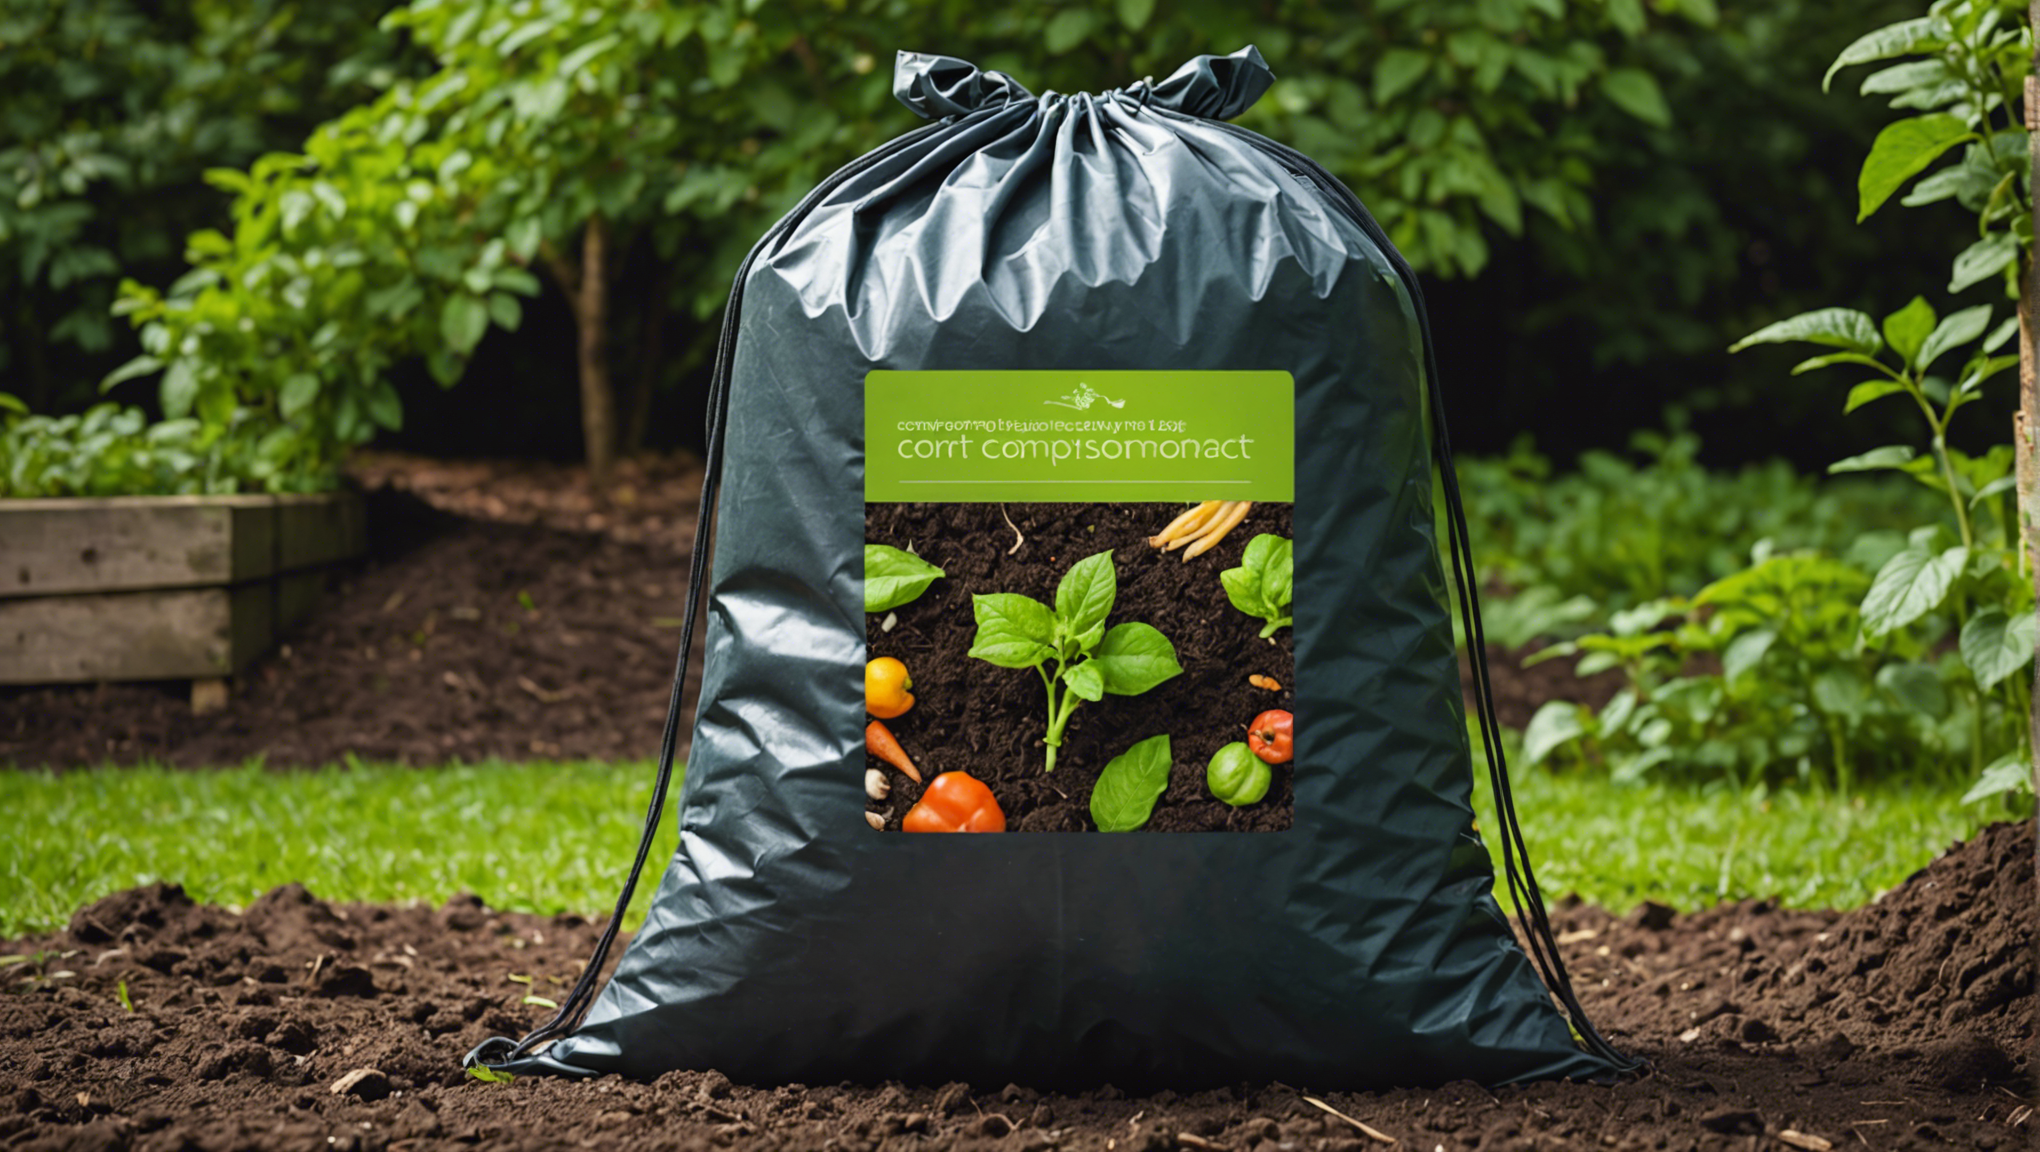 découvrez comment utiliser un sac de compostage pour transformer efficacement vos déchets en compost de qualité et contribuer à la préservation de l'environnement.